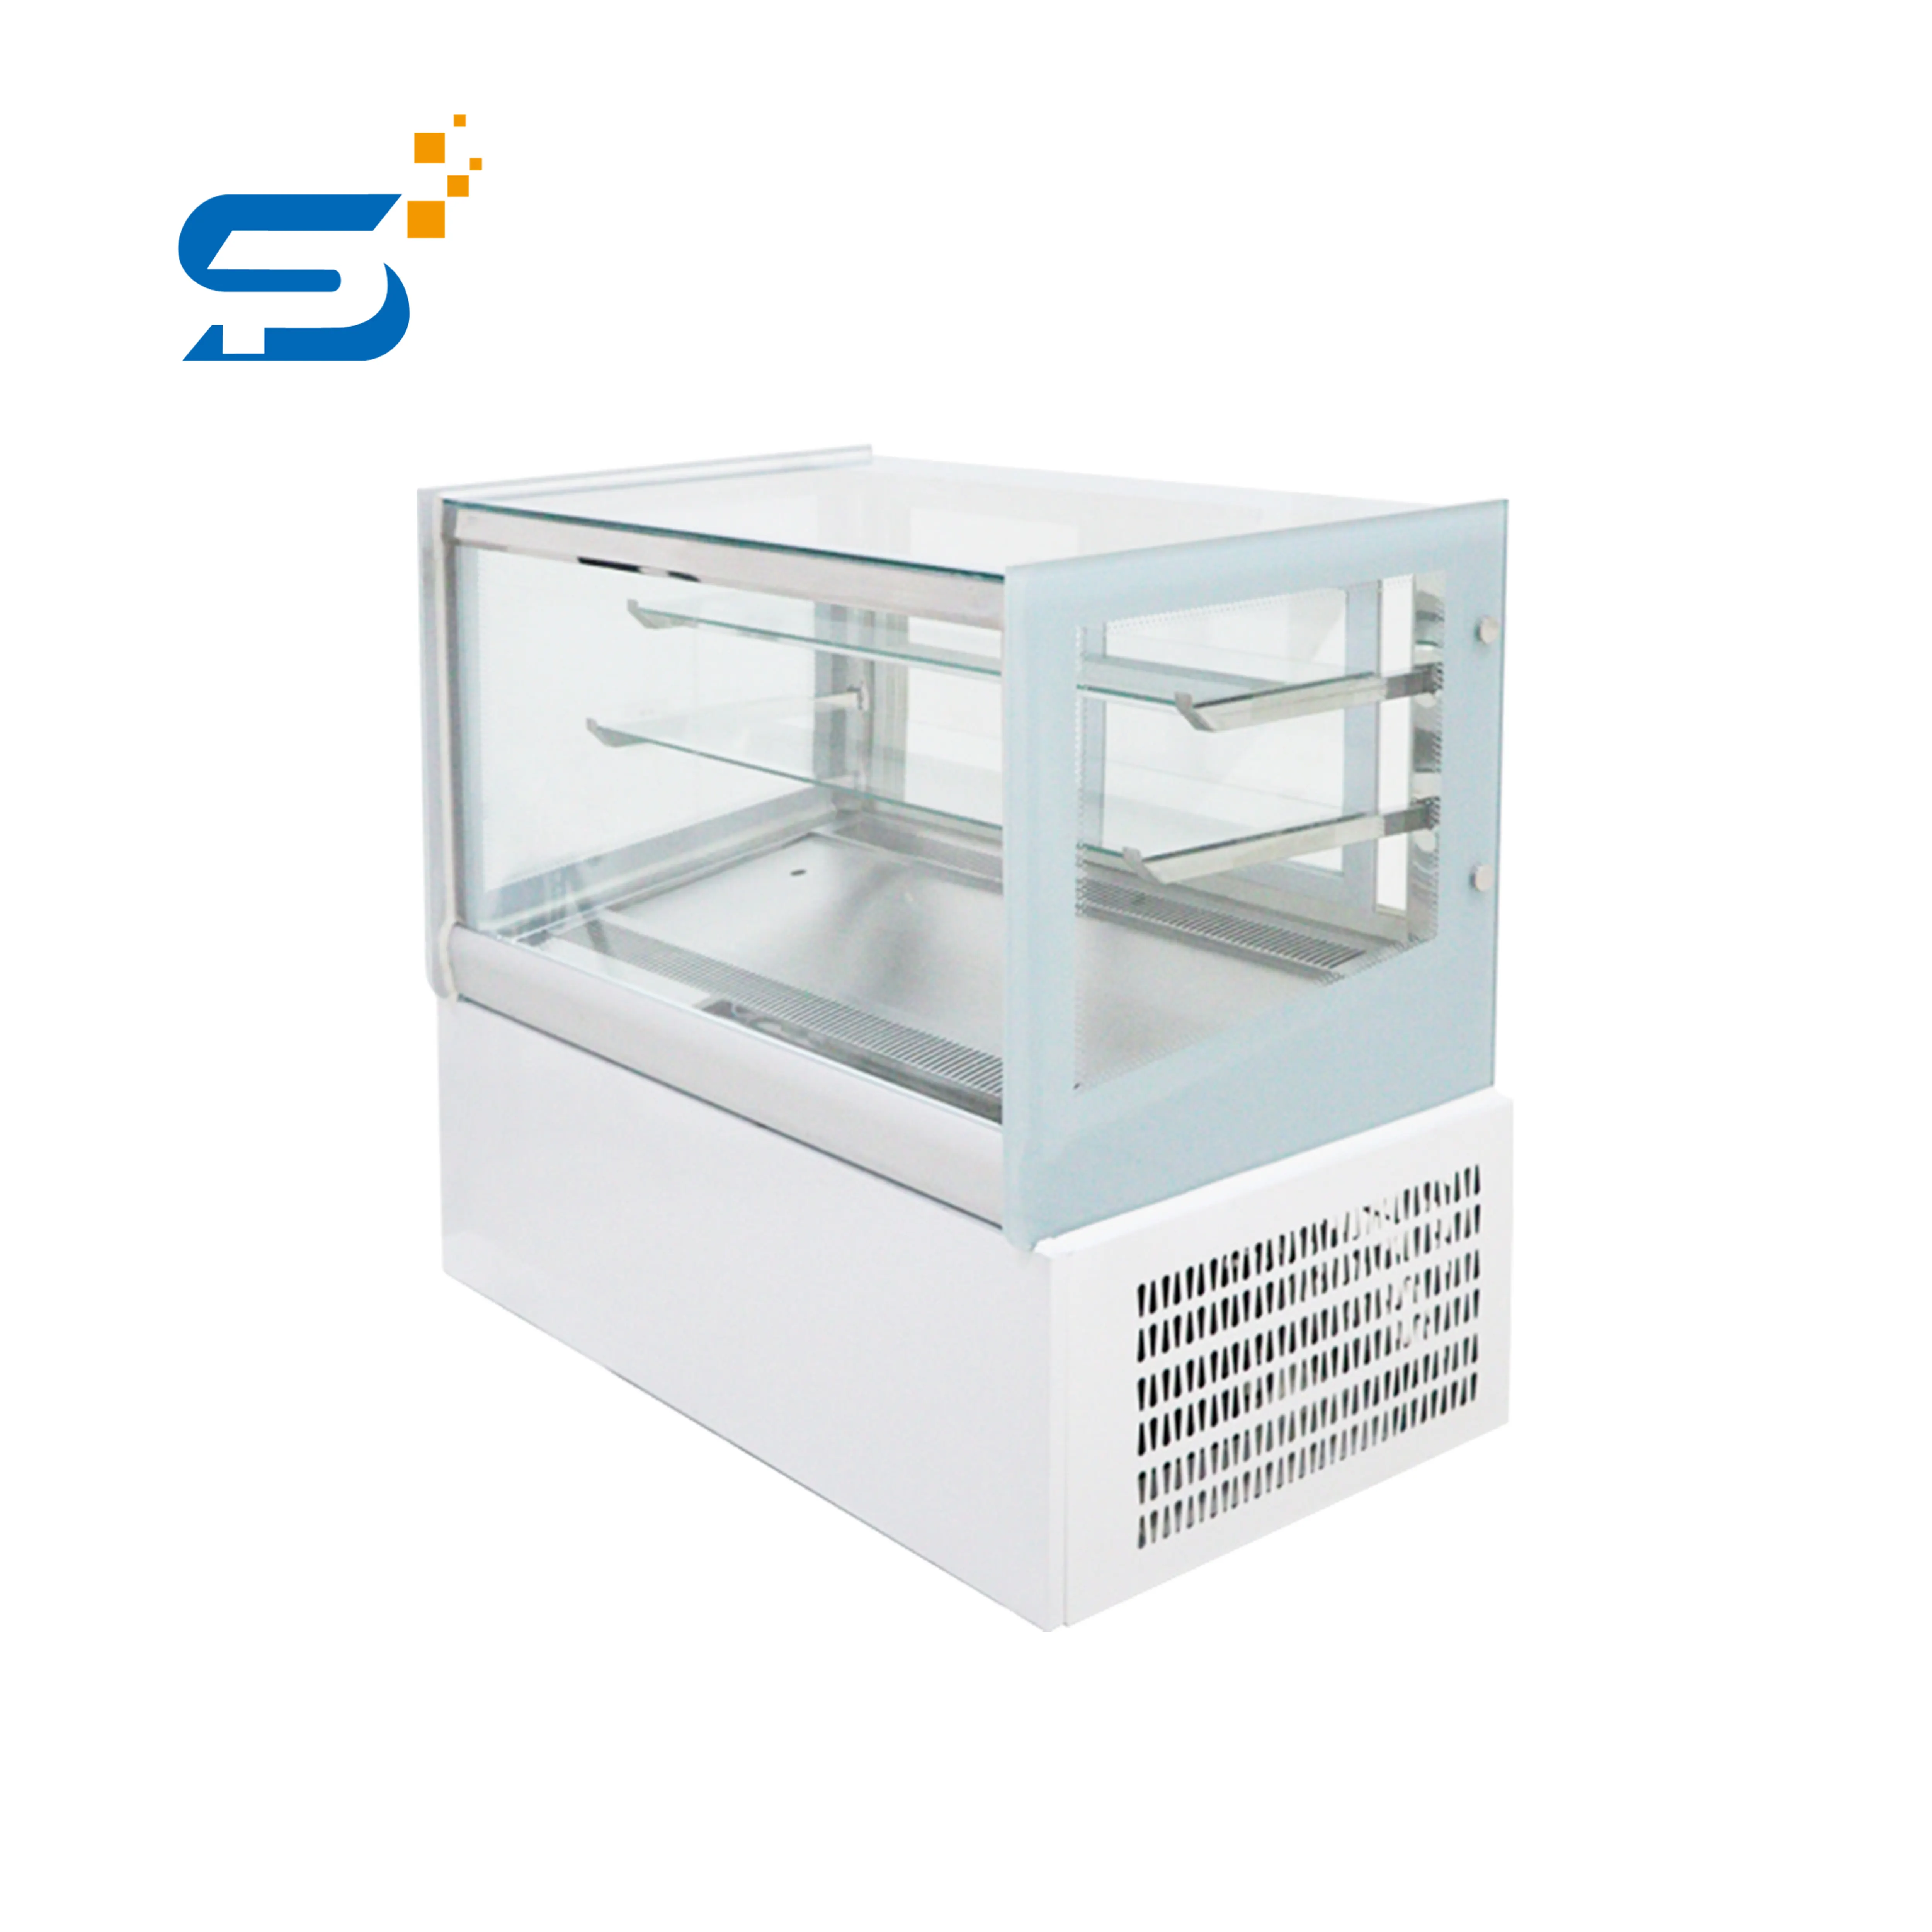 Prometheus freezer para superfície/café/loja/padaria, refrigerador, bolo, geladeira